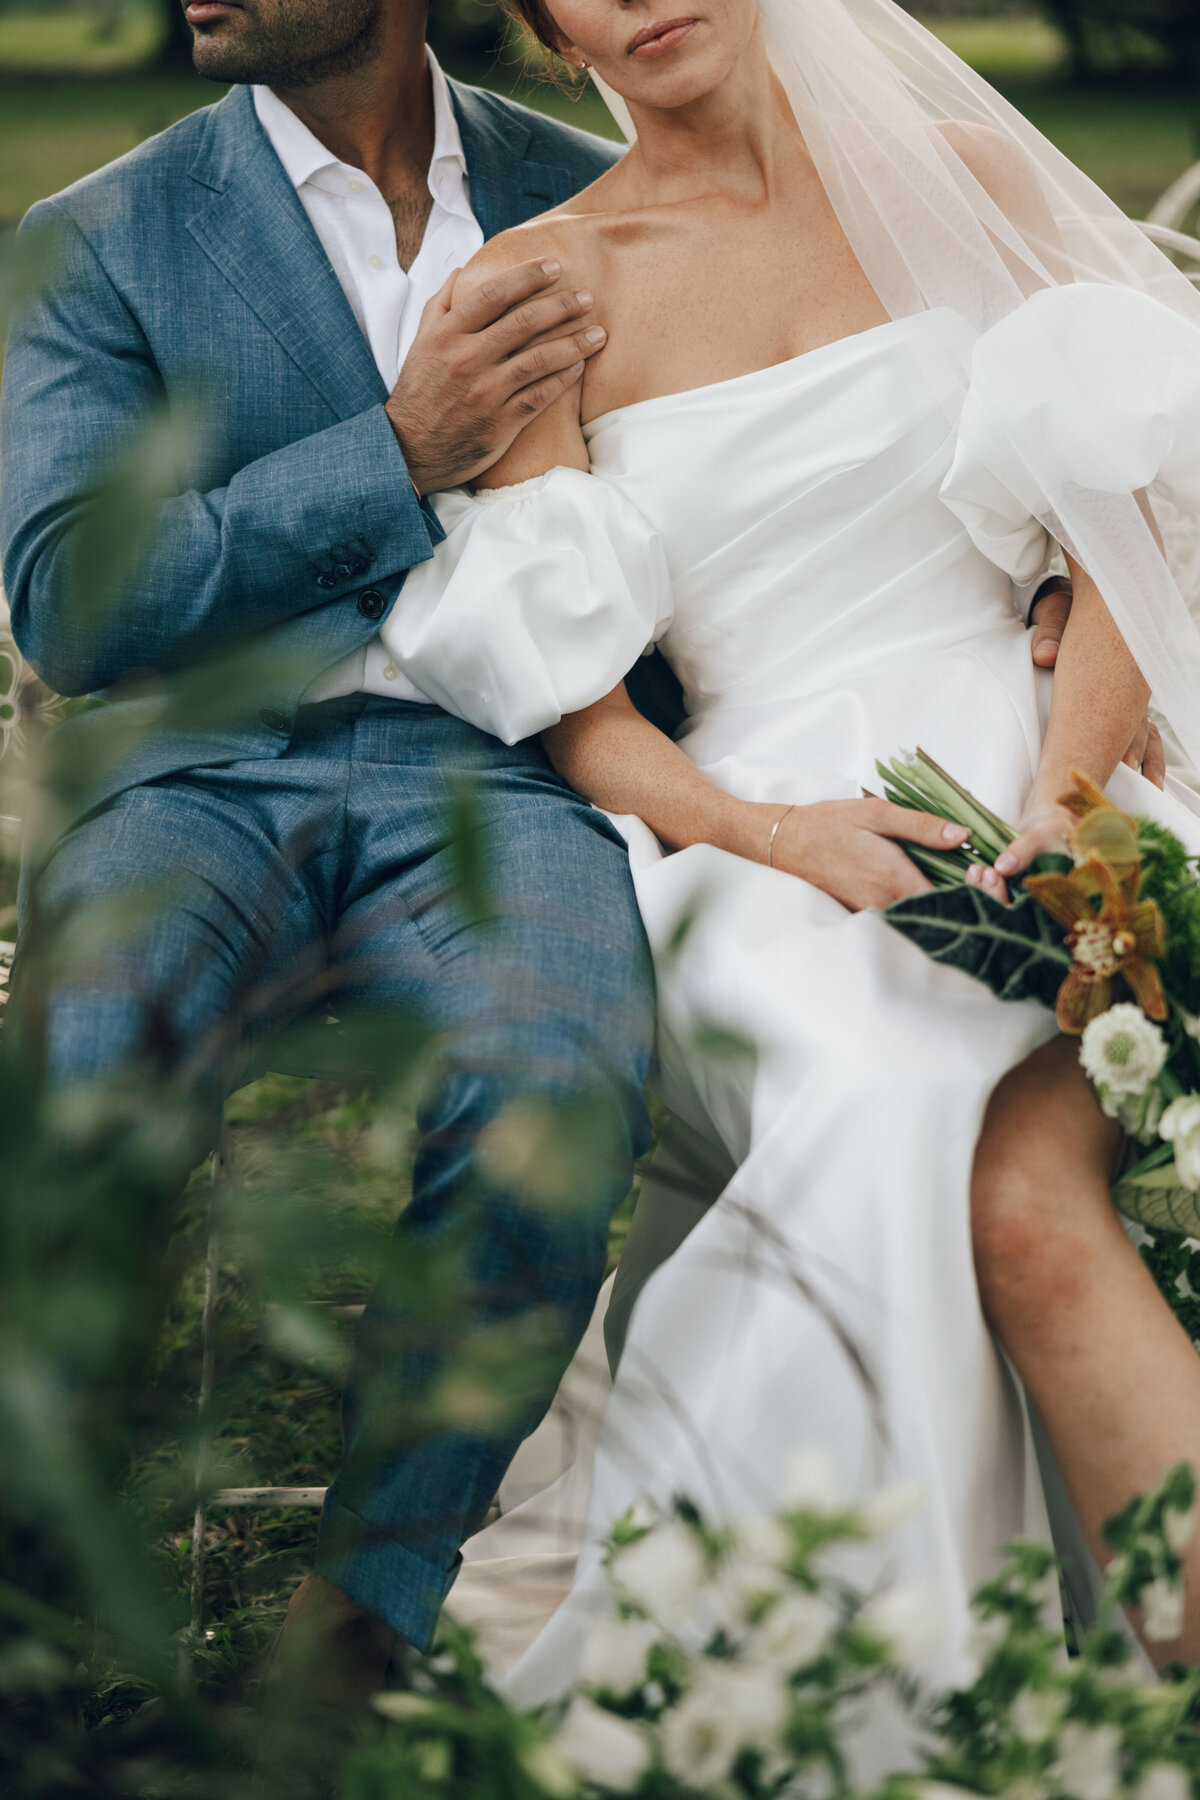 fairchild-botanical-garden-anti-bride-wedding-miami-florida-237